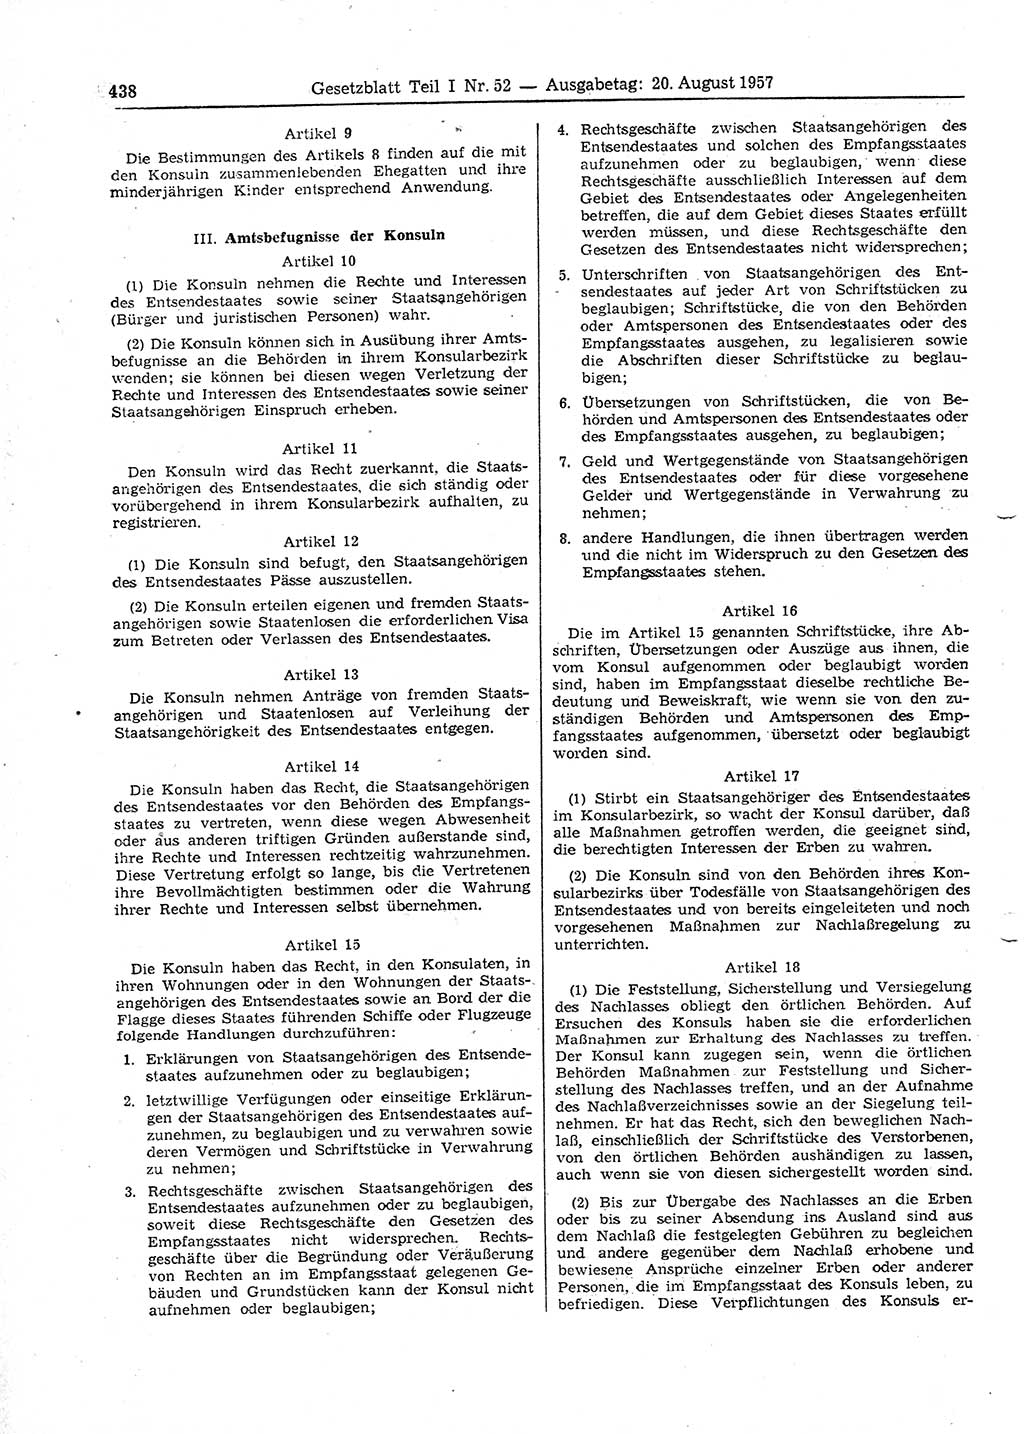 Gesetzblatt (GBl.) der Deutschen Demokratischen Republik (DDR) Teil Ⅰ 1957, Seite 438 (GBl. DDR Ⅰ 1957, S. 438)